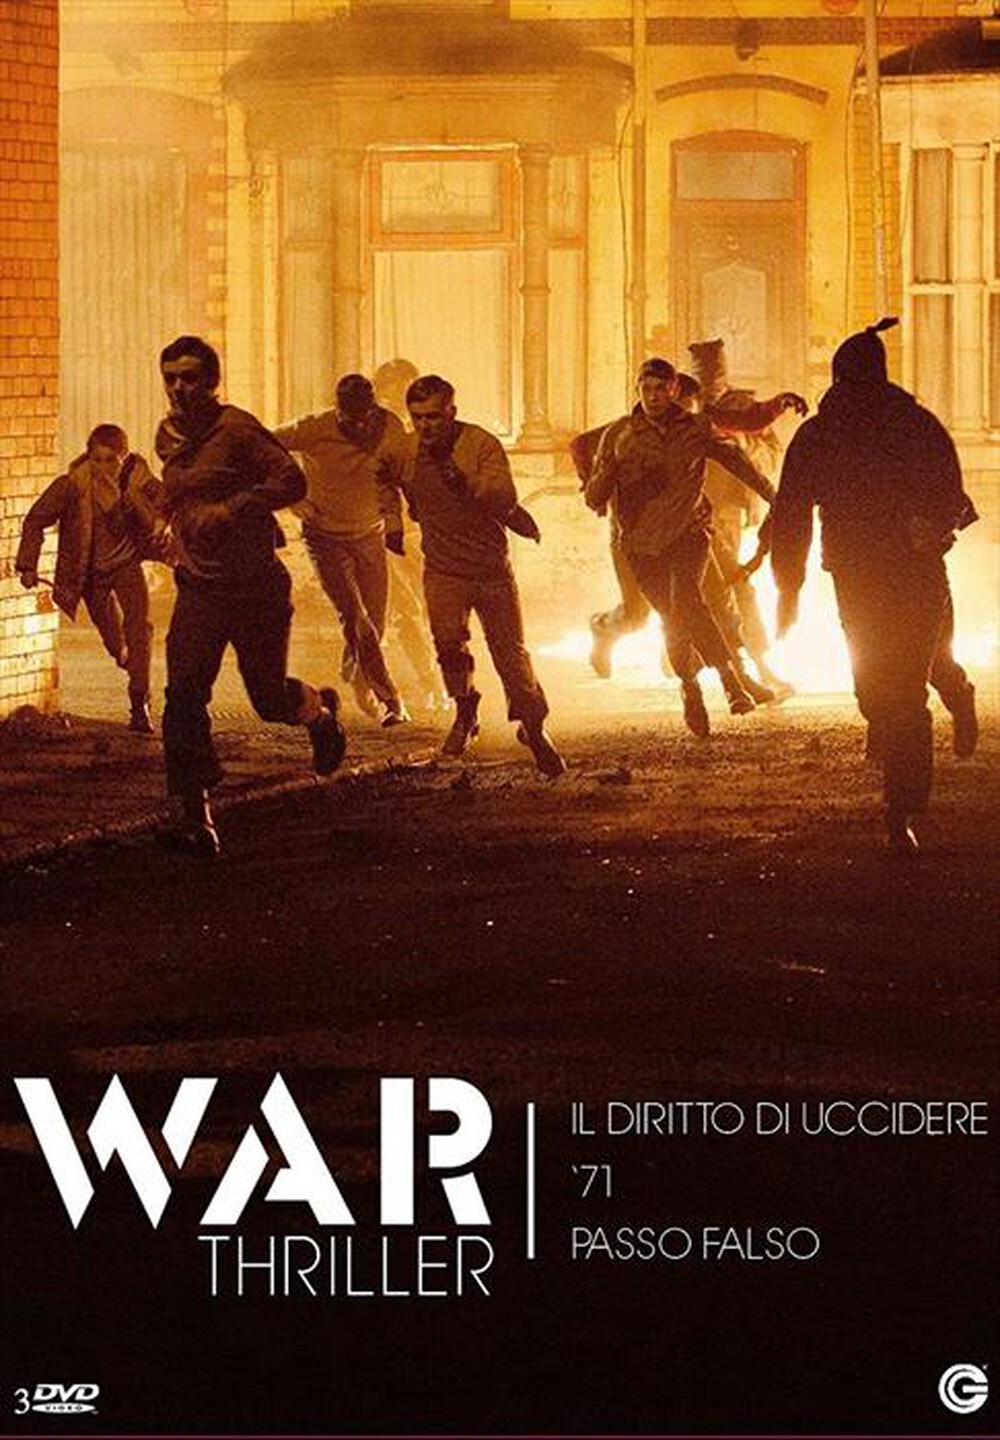 "CECCHI GORI - War Thriller (3 Dvd)"